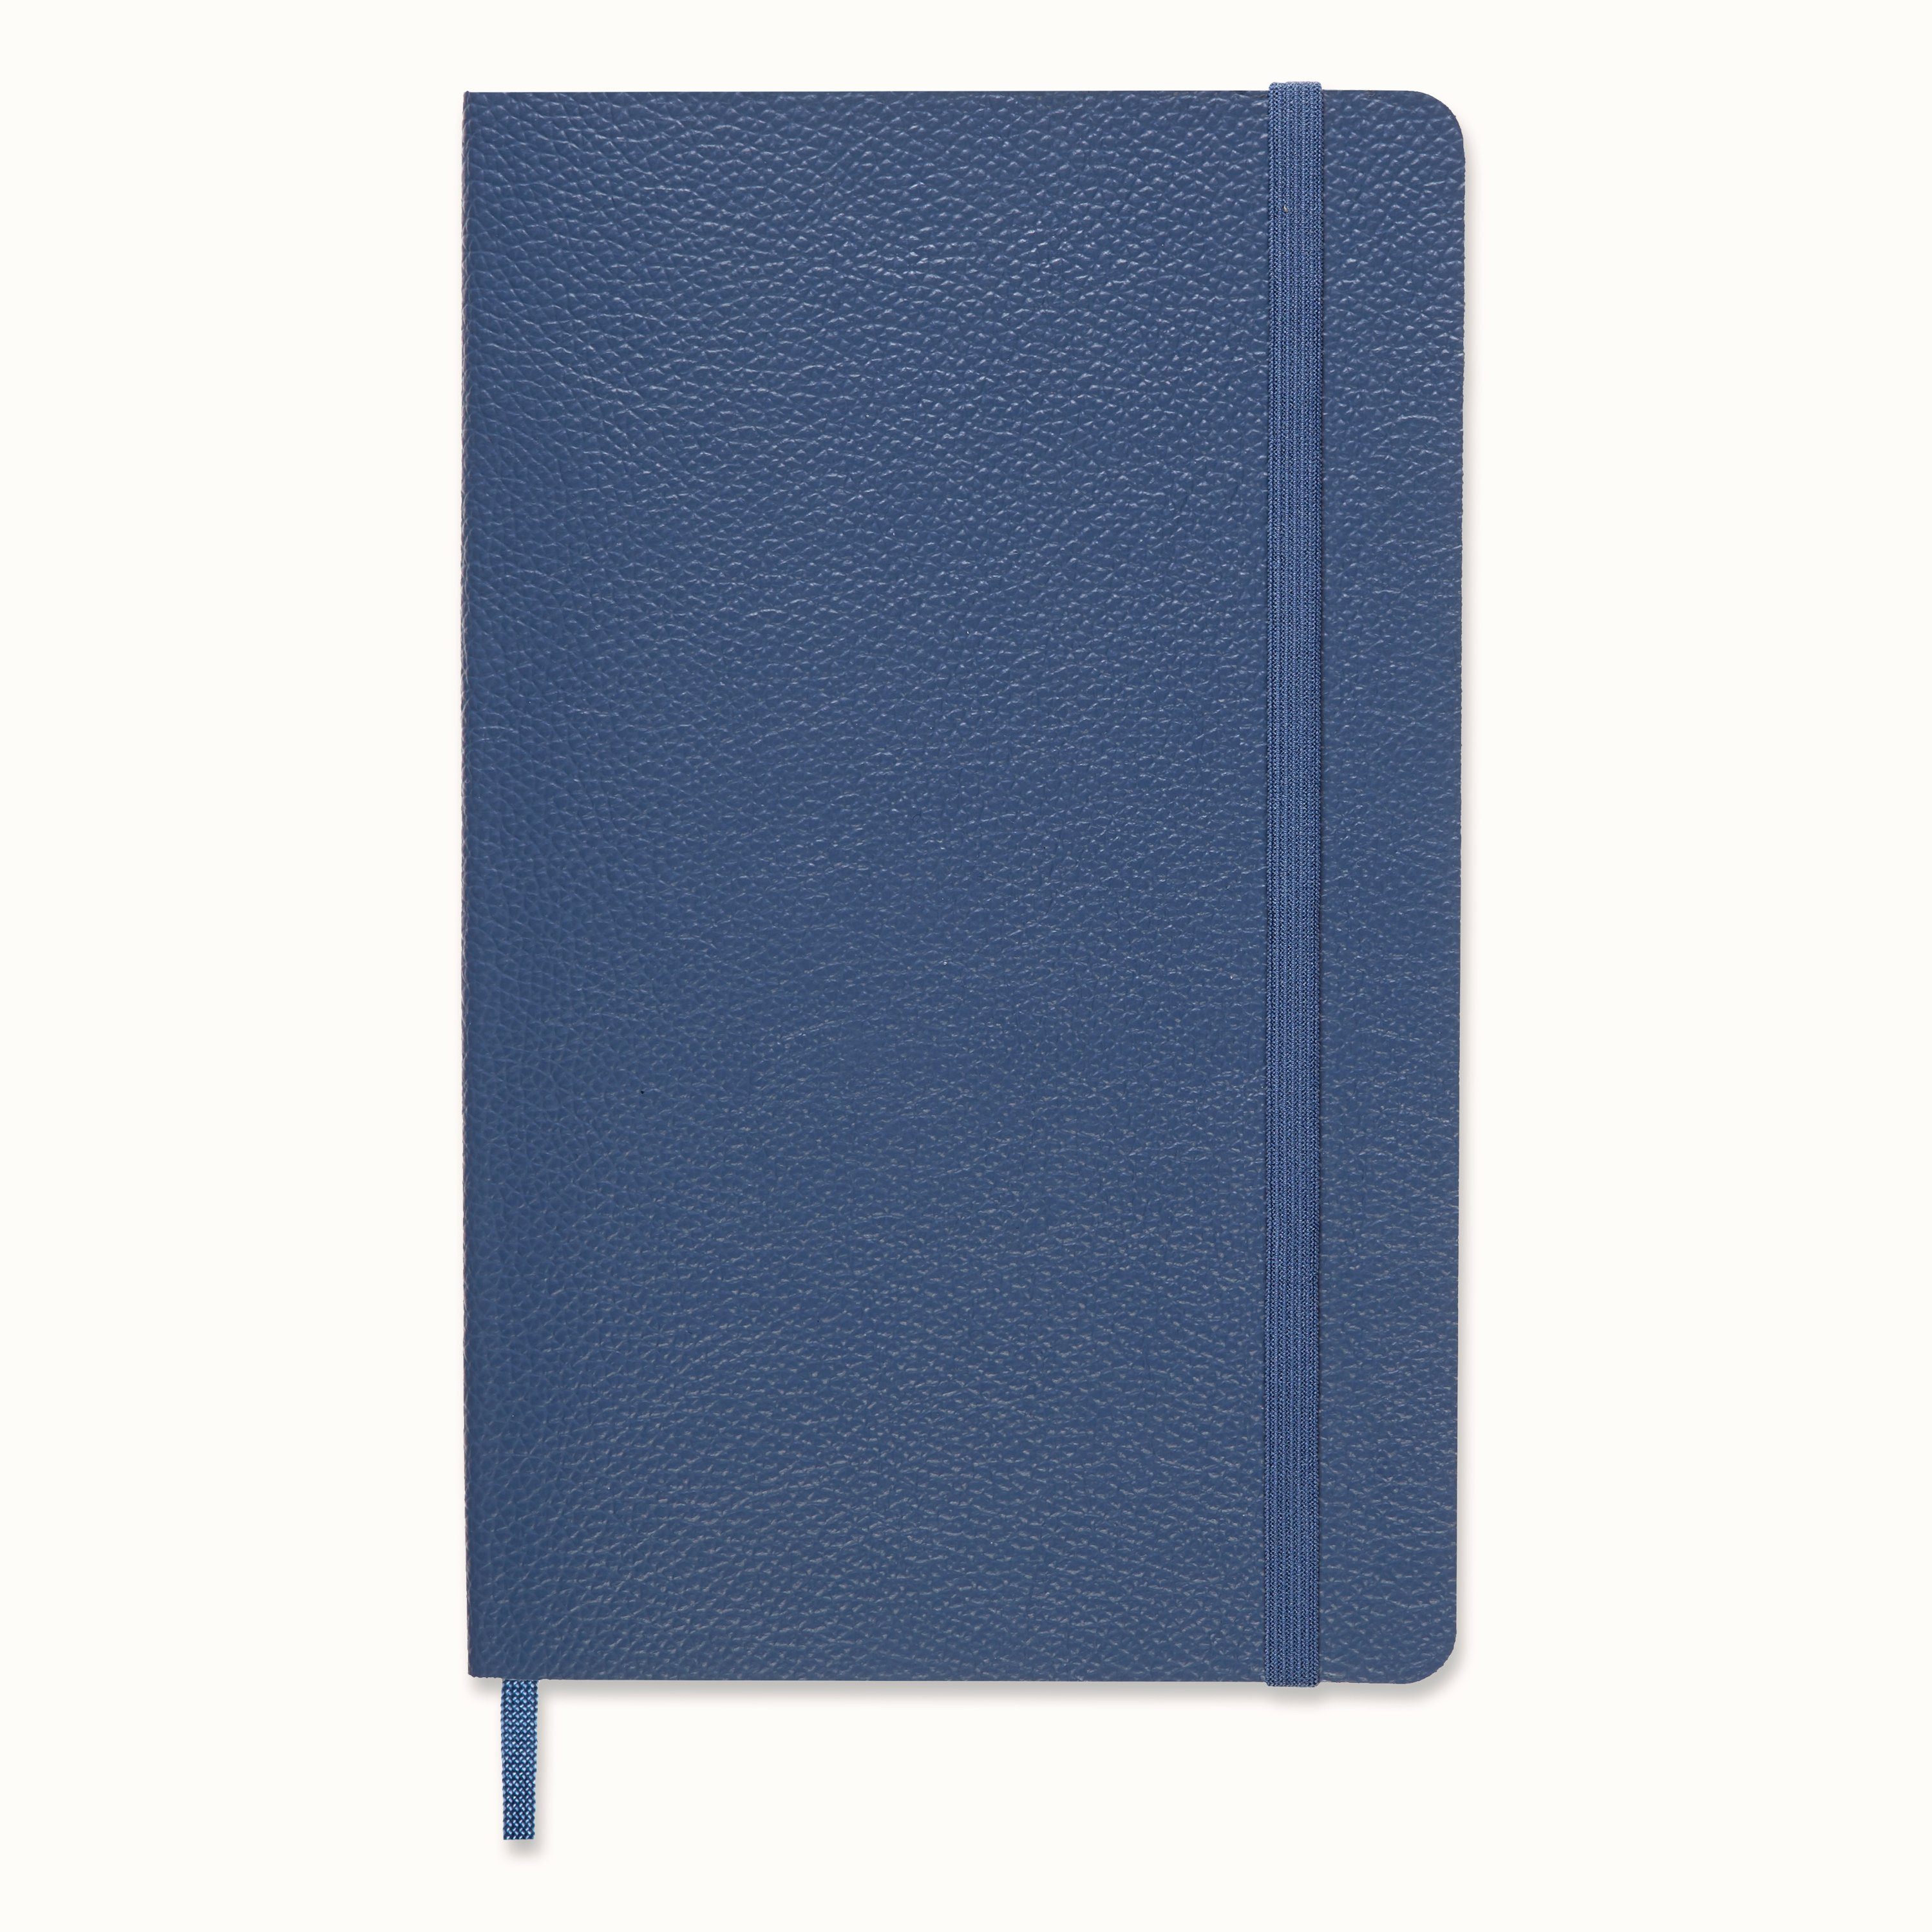 Blau Vergissmeinnicht (13x21) - Notizbuch, MOLESKINE - Ledereinband Liniert Weicher Groß -